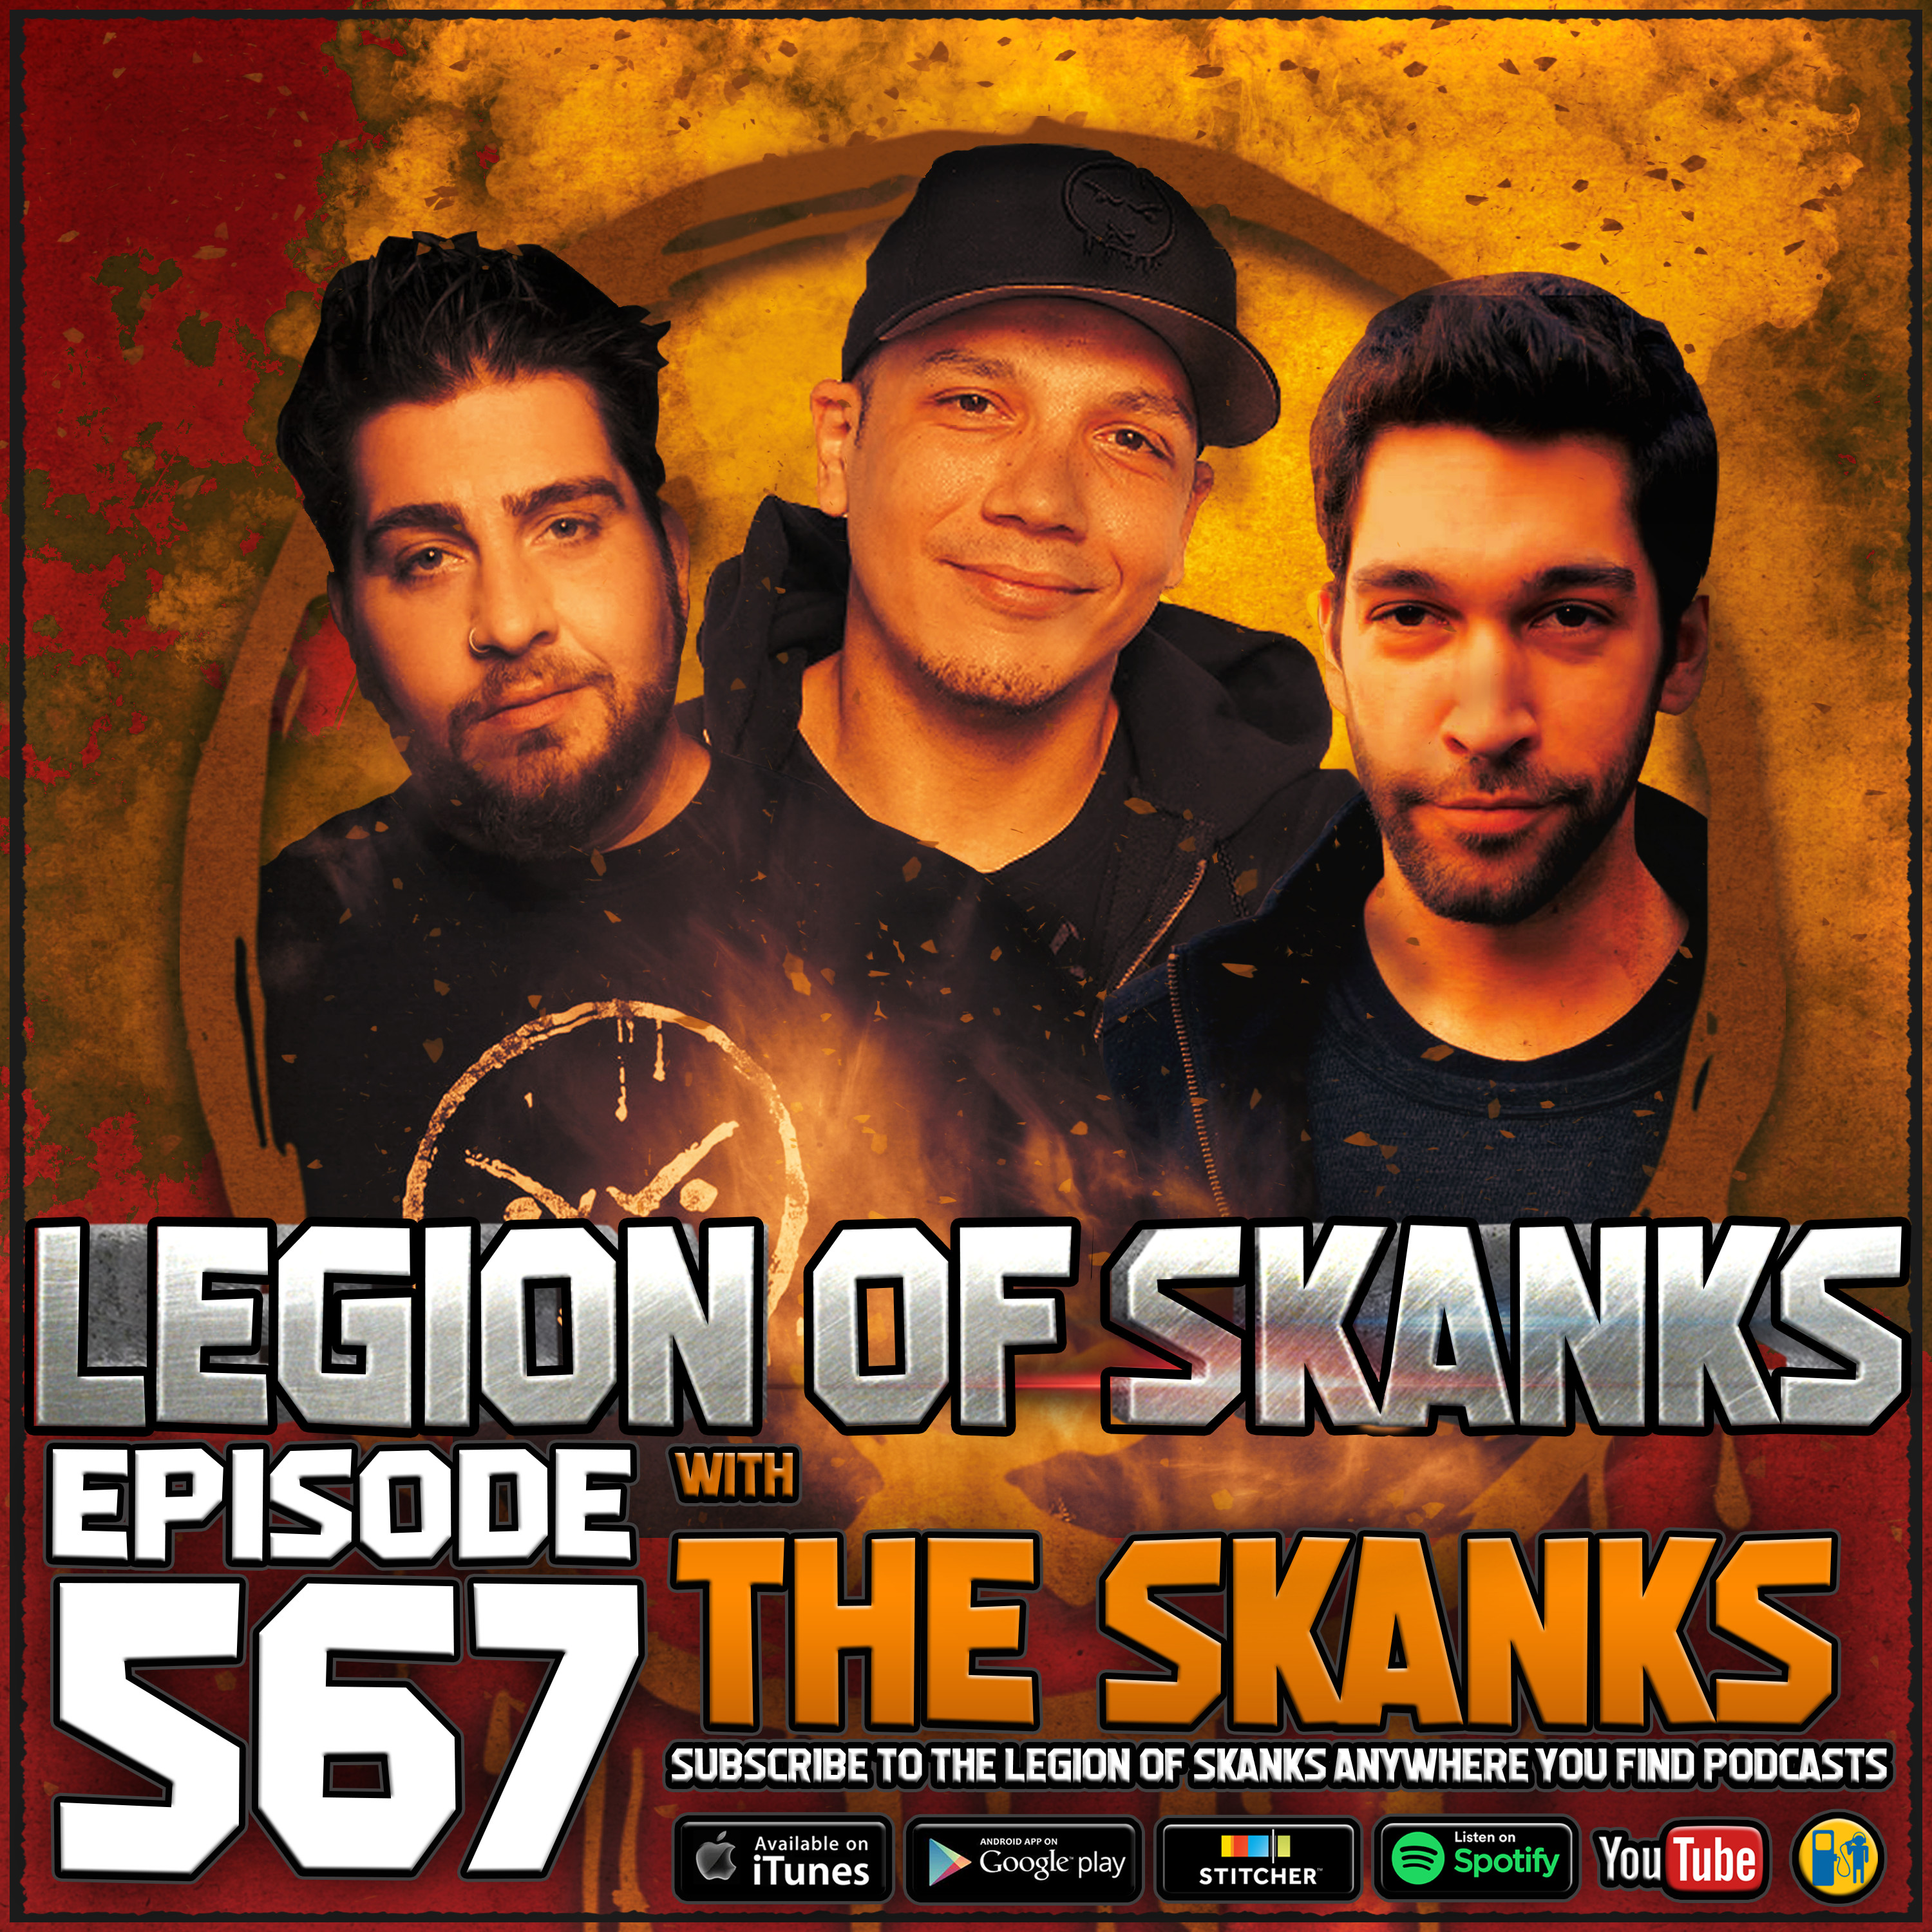 Legion of skanks live